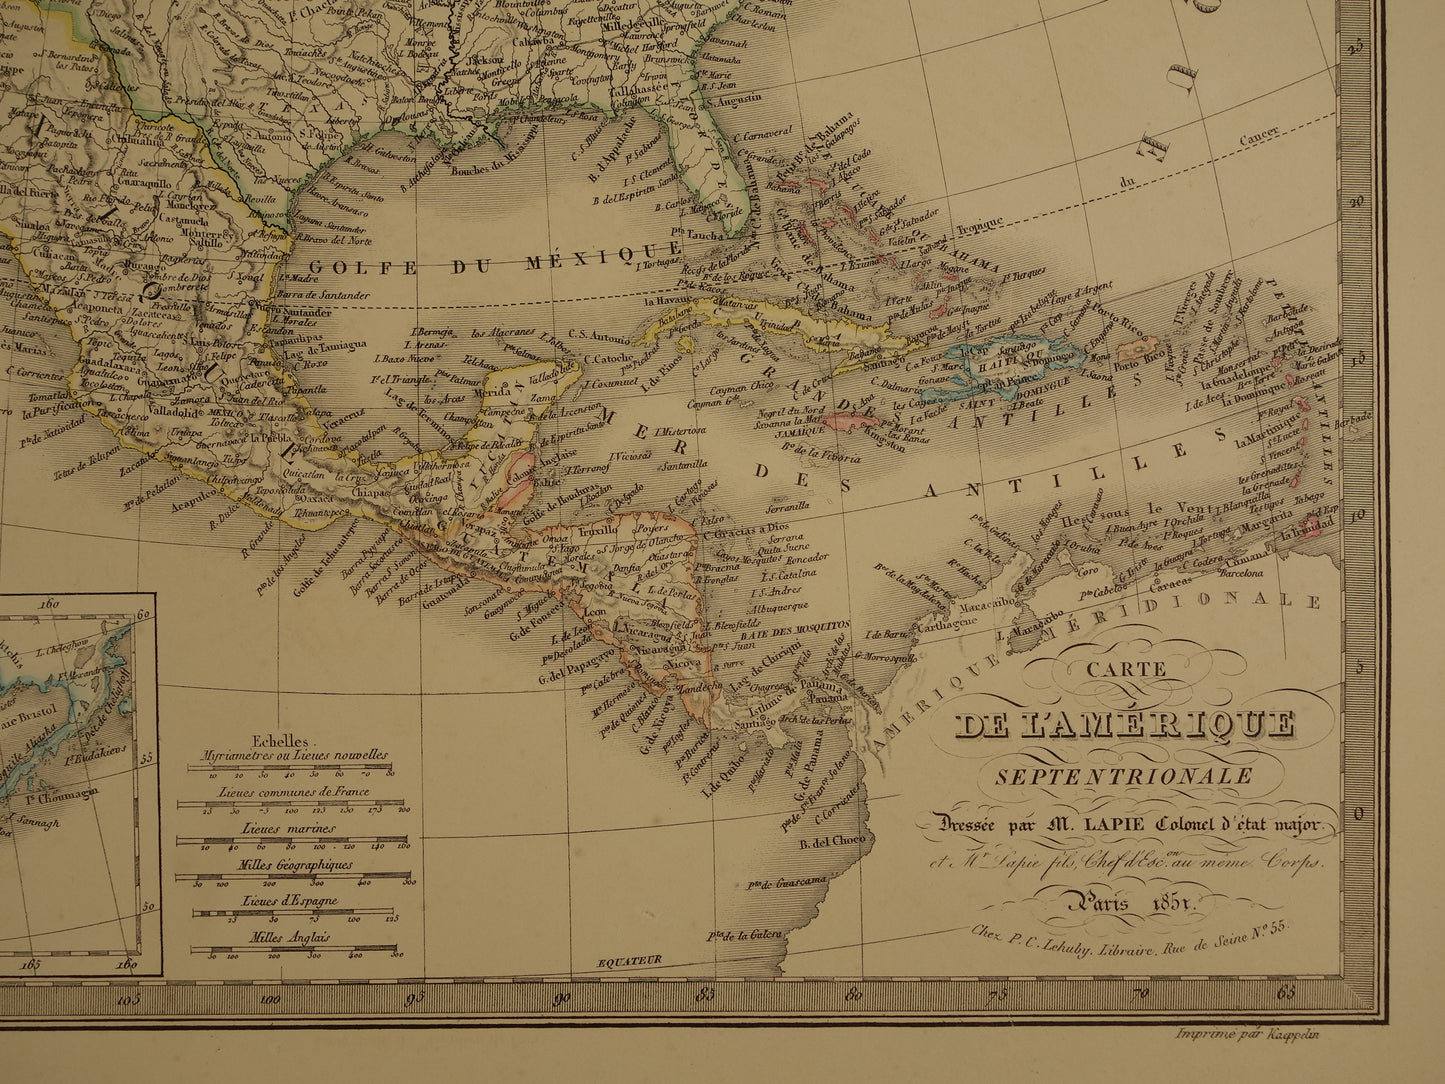 NOORD-AMERIKA grote antieke kaart uit 1851 - Oude landkaart VS Canada Mexico - originele vintage kaarten